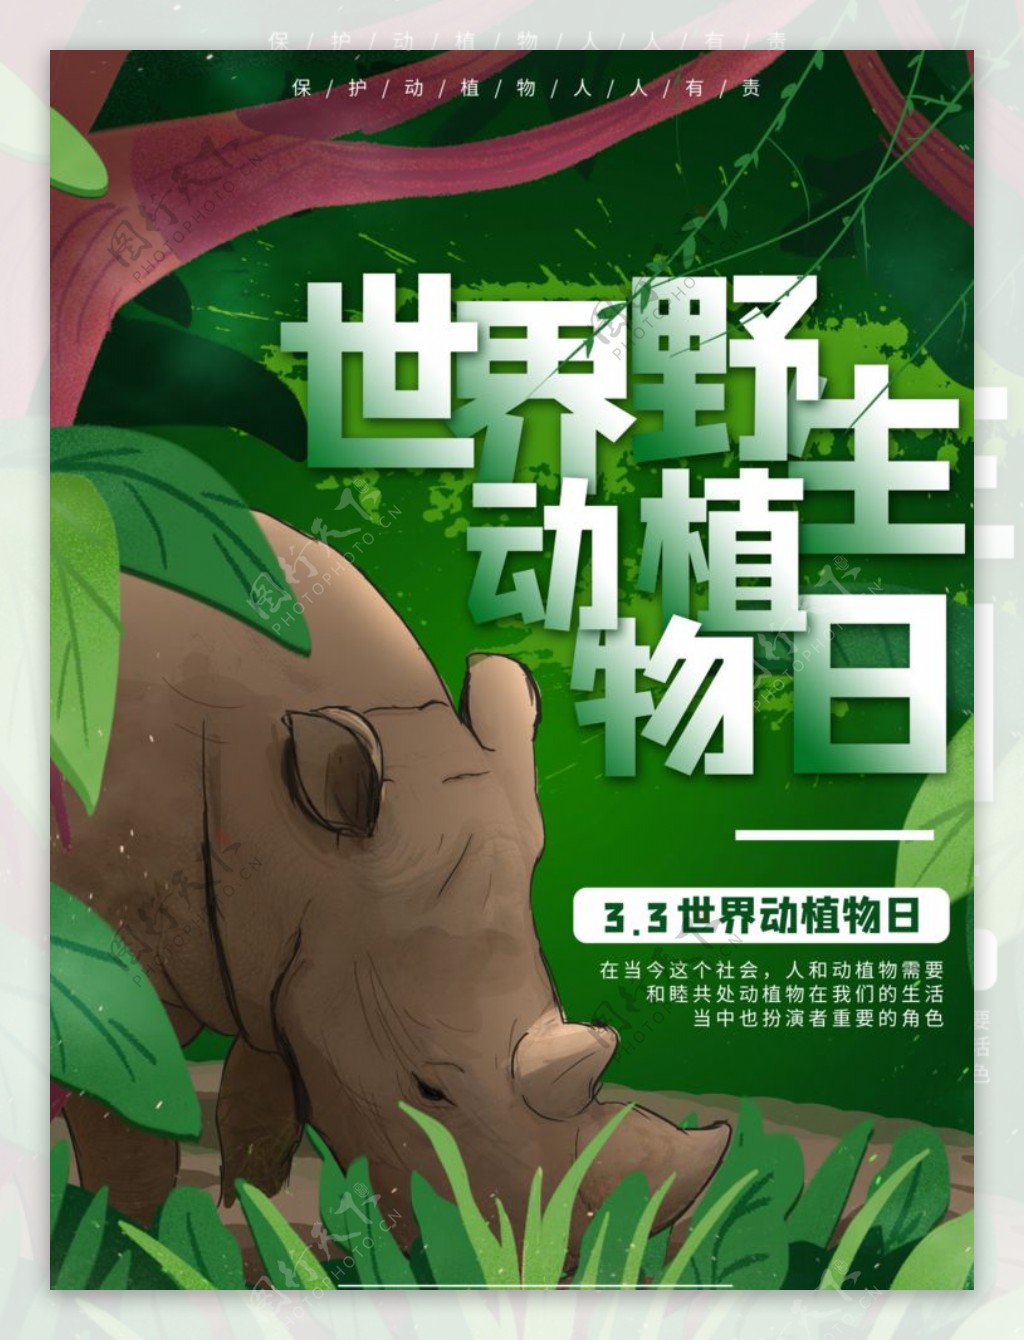 世界野生动植物日海报